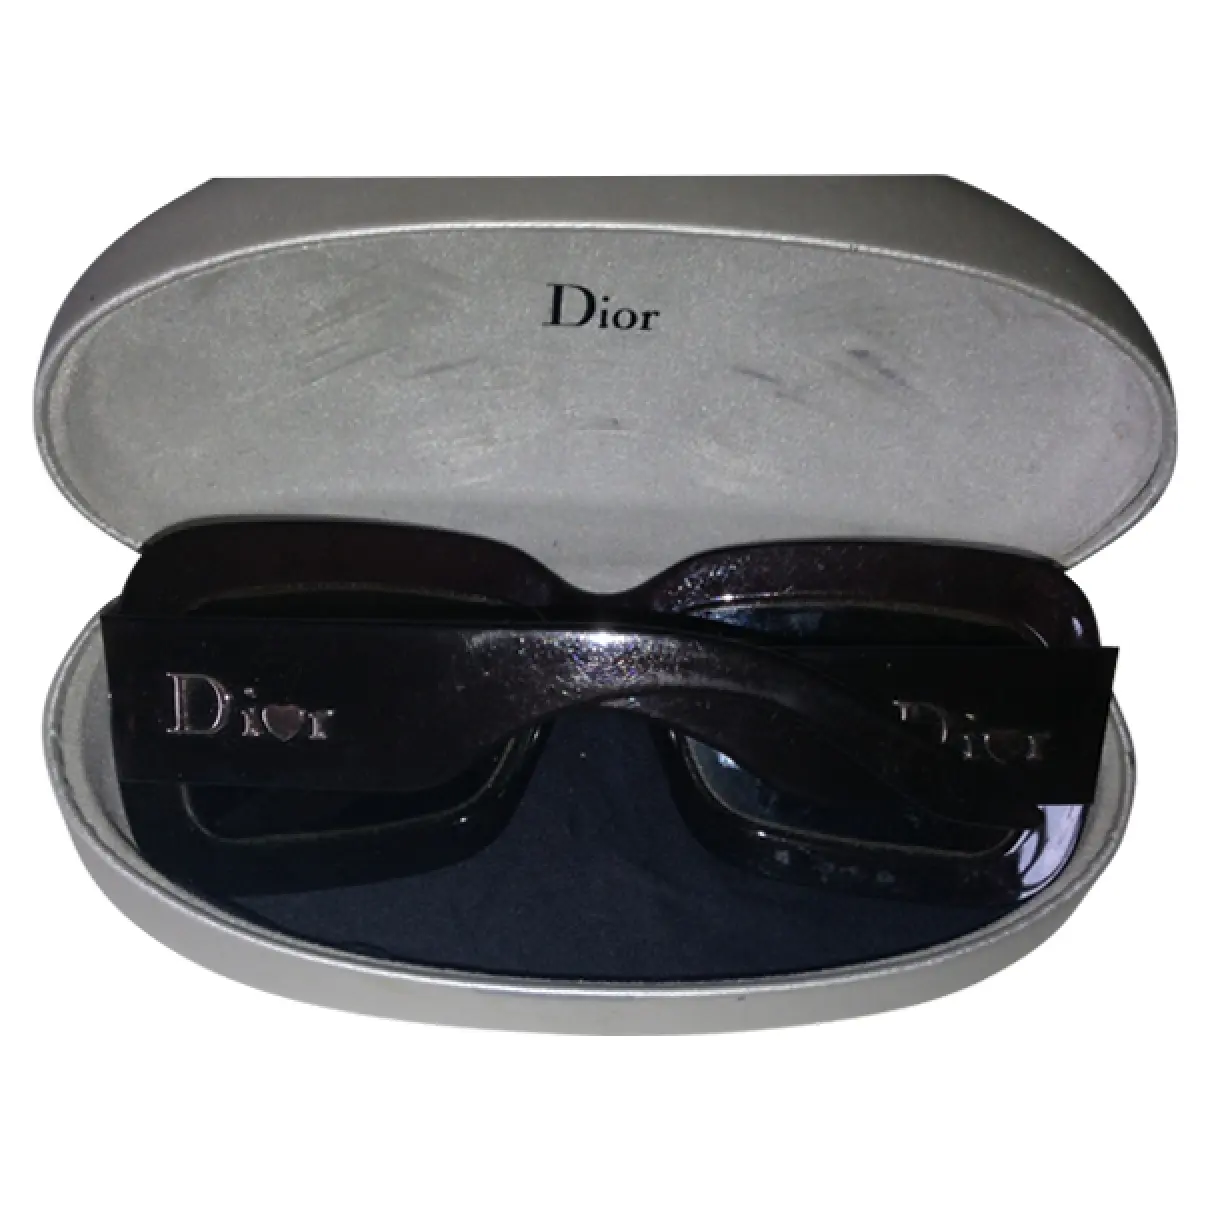 Dior sunglasses for sale